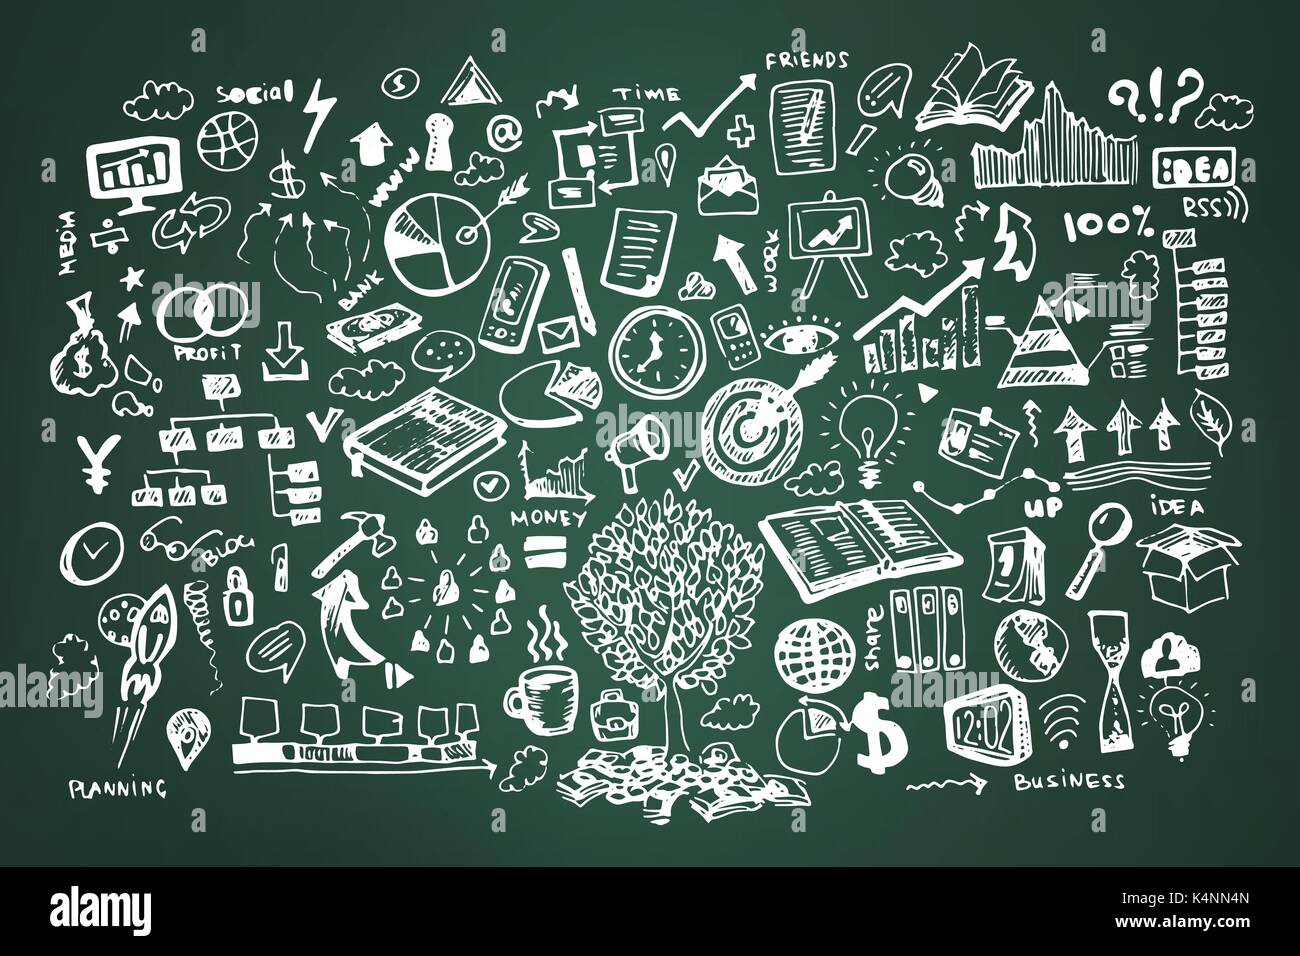 Illustration vecteur doodle d'affaires. Icône et éléments dessinés à la main, la craie sur les icônes de carte verte Illustration de Vecteur